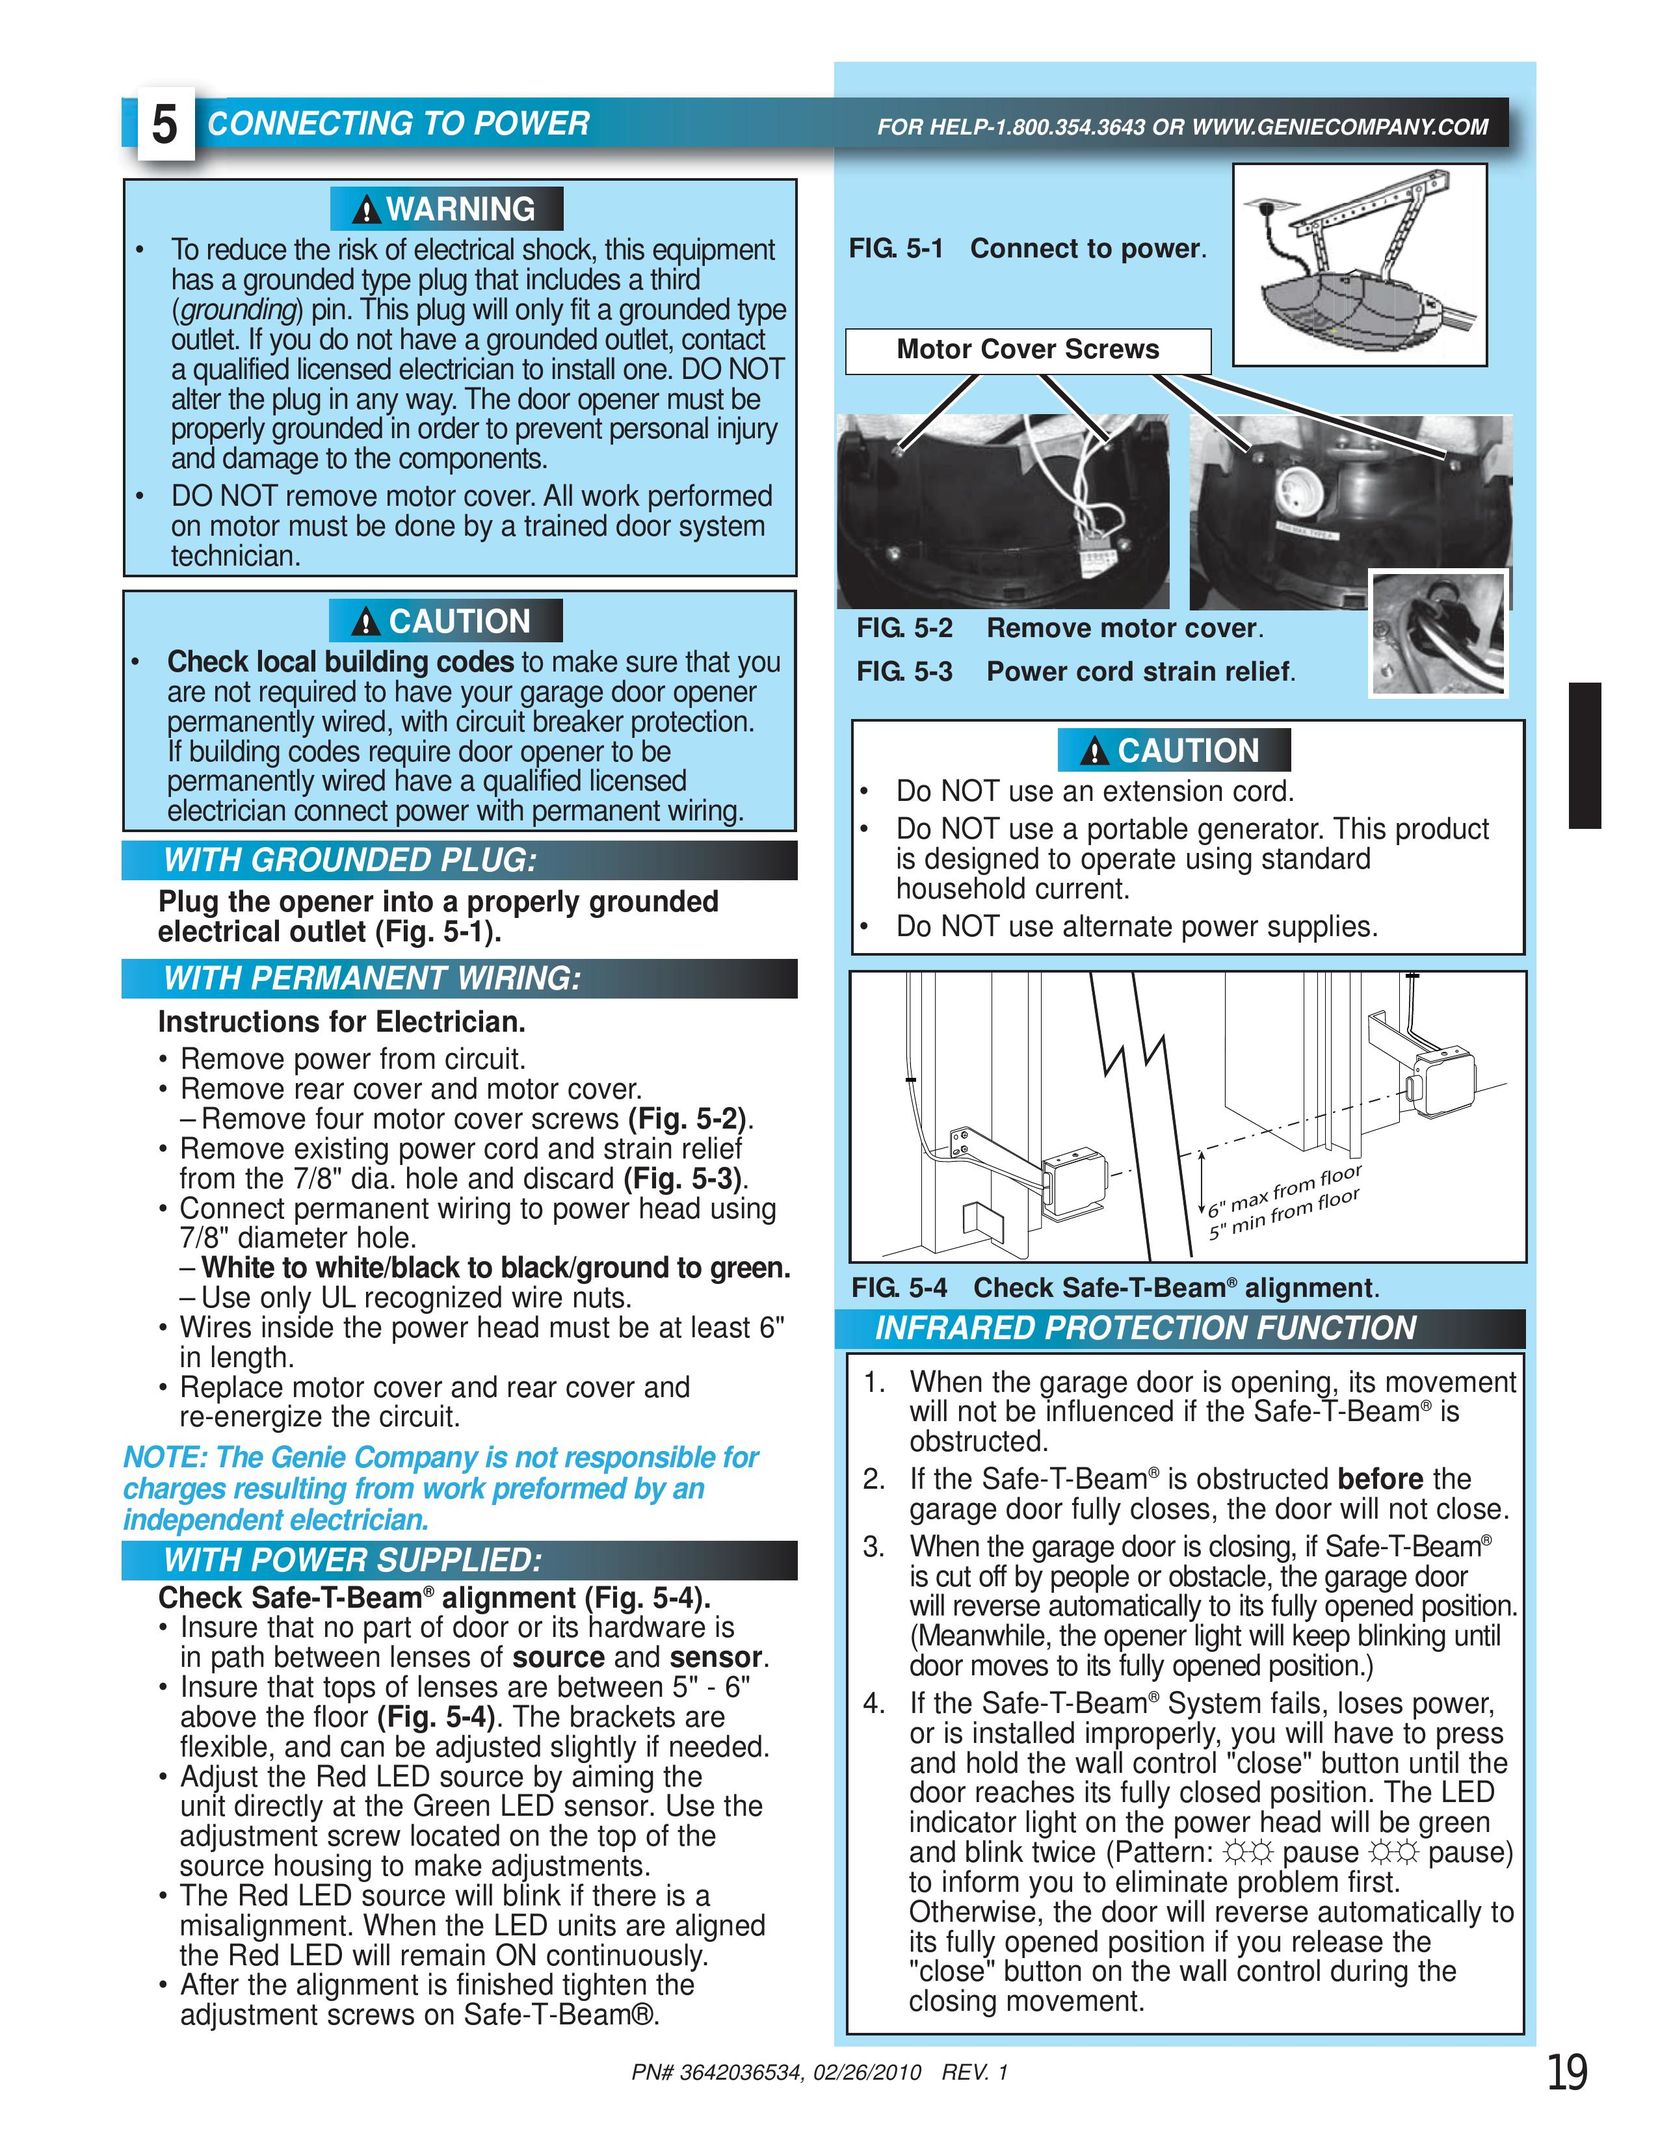 Chamberlain 1022 Garage Door Opener User Manual (Page 19)